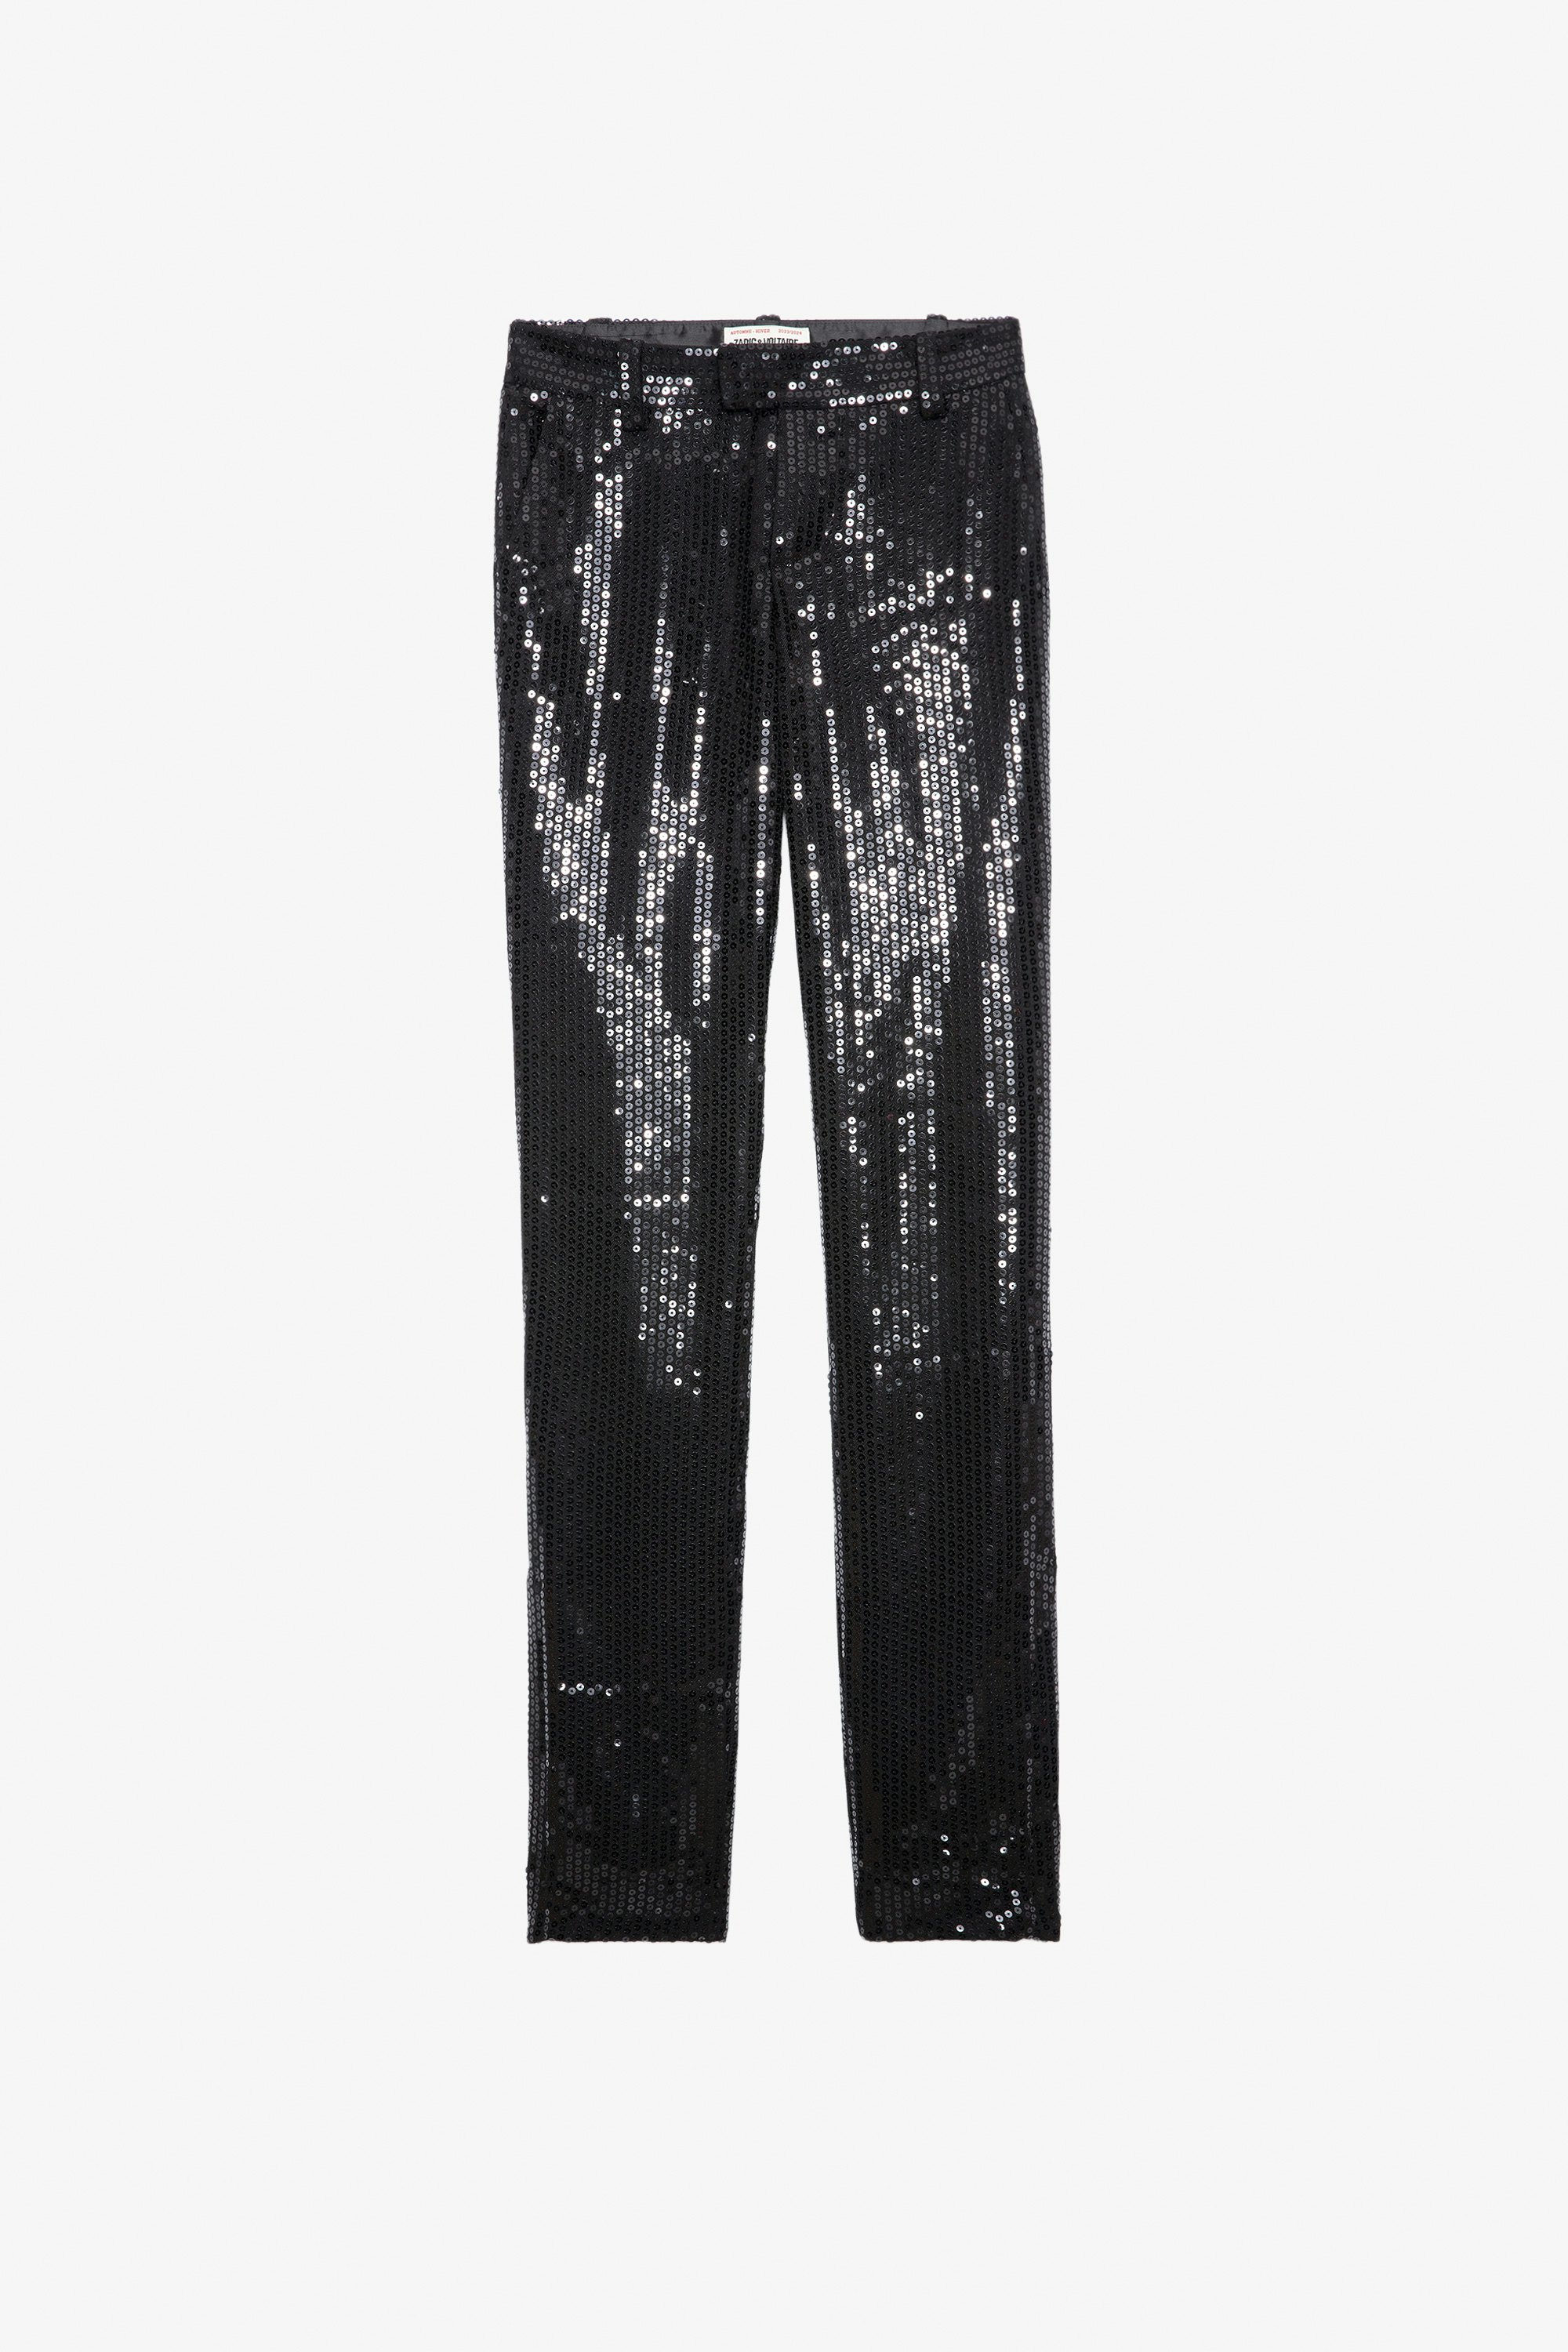 Pantaloni Prune Lustrini - Pantaloni da tailleur neri con lustrini, tasche e orli con zip.